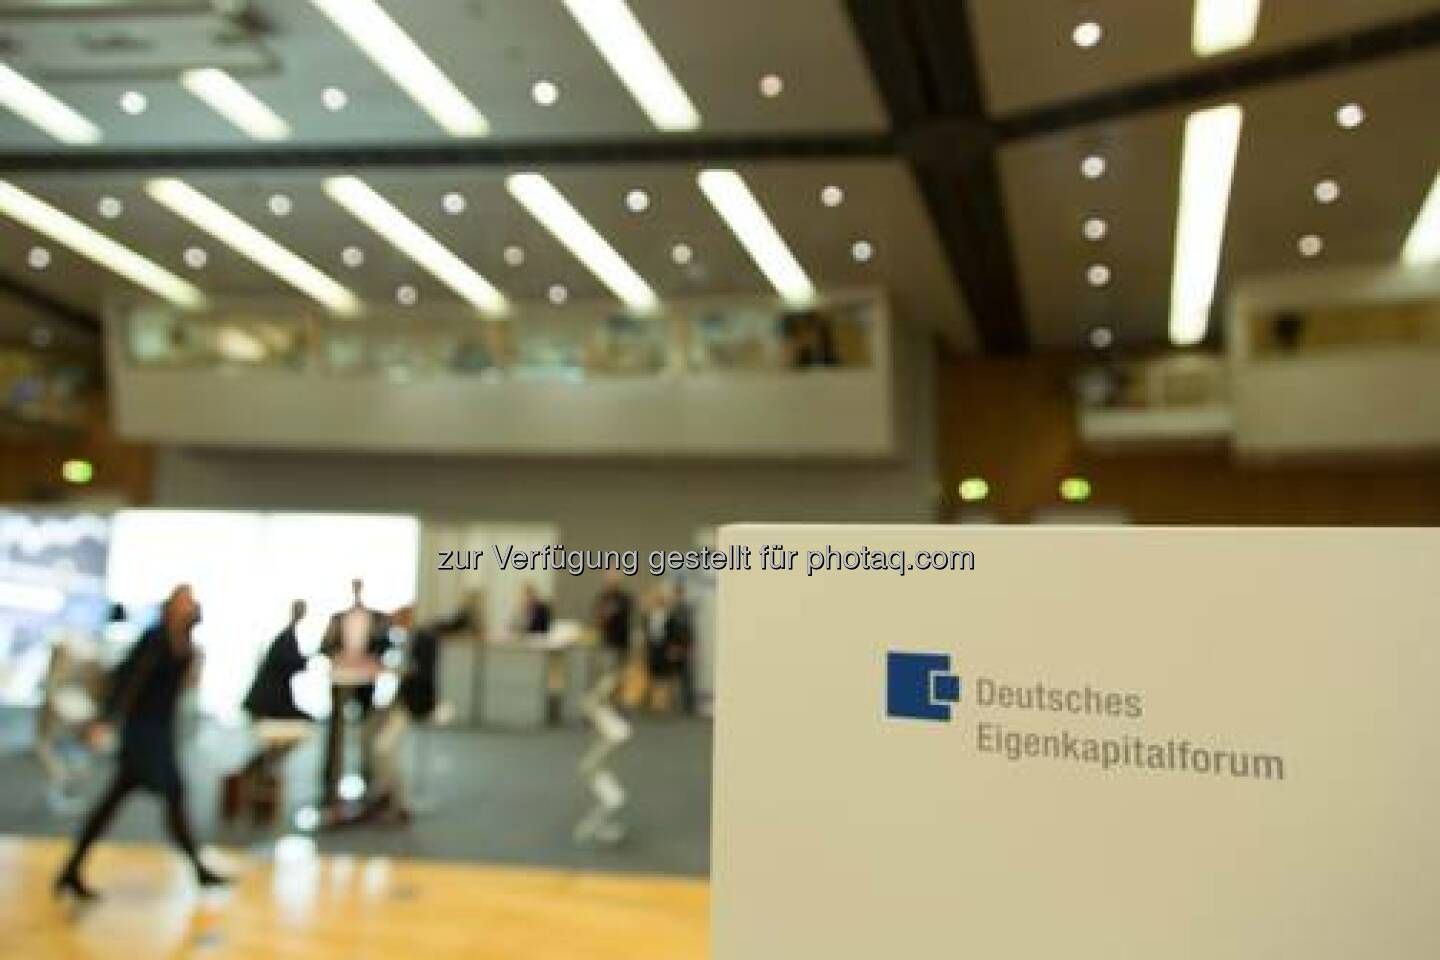 Vom 24. bis 26. November 2014 fand in der Frankfurter Messe das alljährliche Deutsche Eigenkapitalforum statt. Die Kapitalmarktkonferenz ist Europas größte Informations- und Netzwerkplattform. Organisiert wird das Forum von der Deutschen Börse und der KfW als Mitveranstalter.